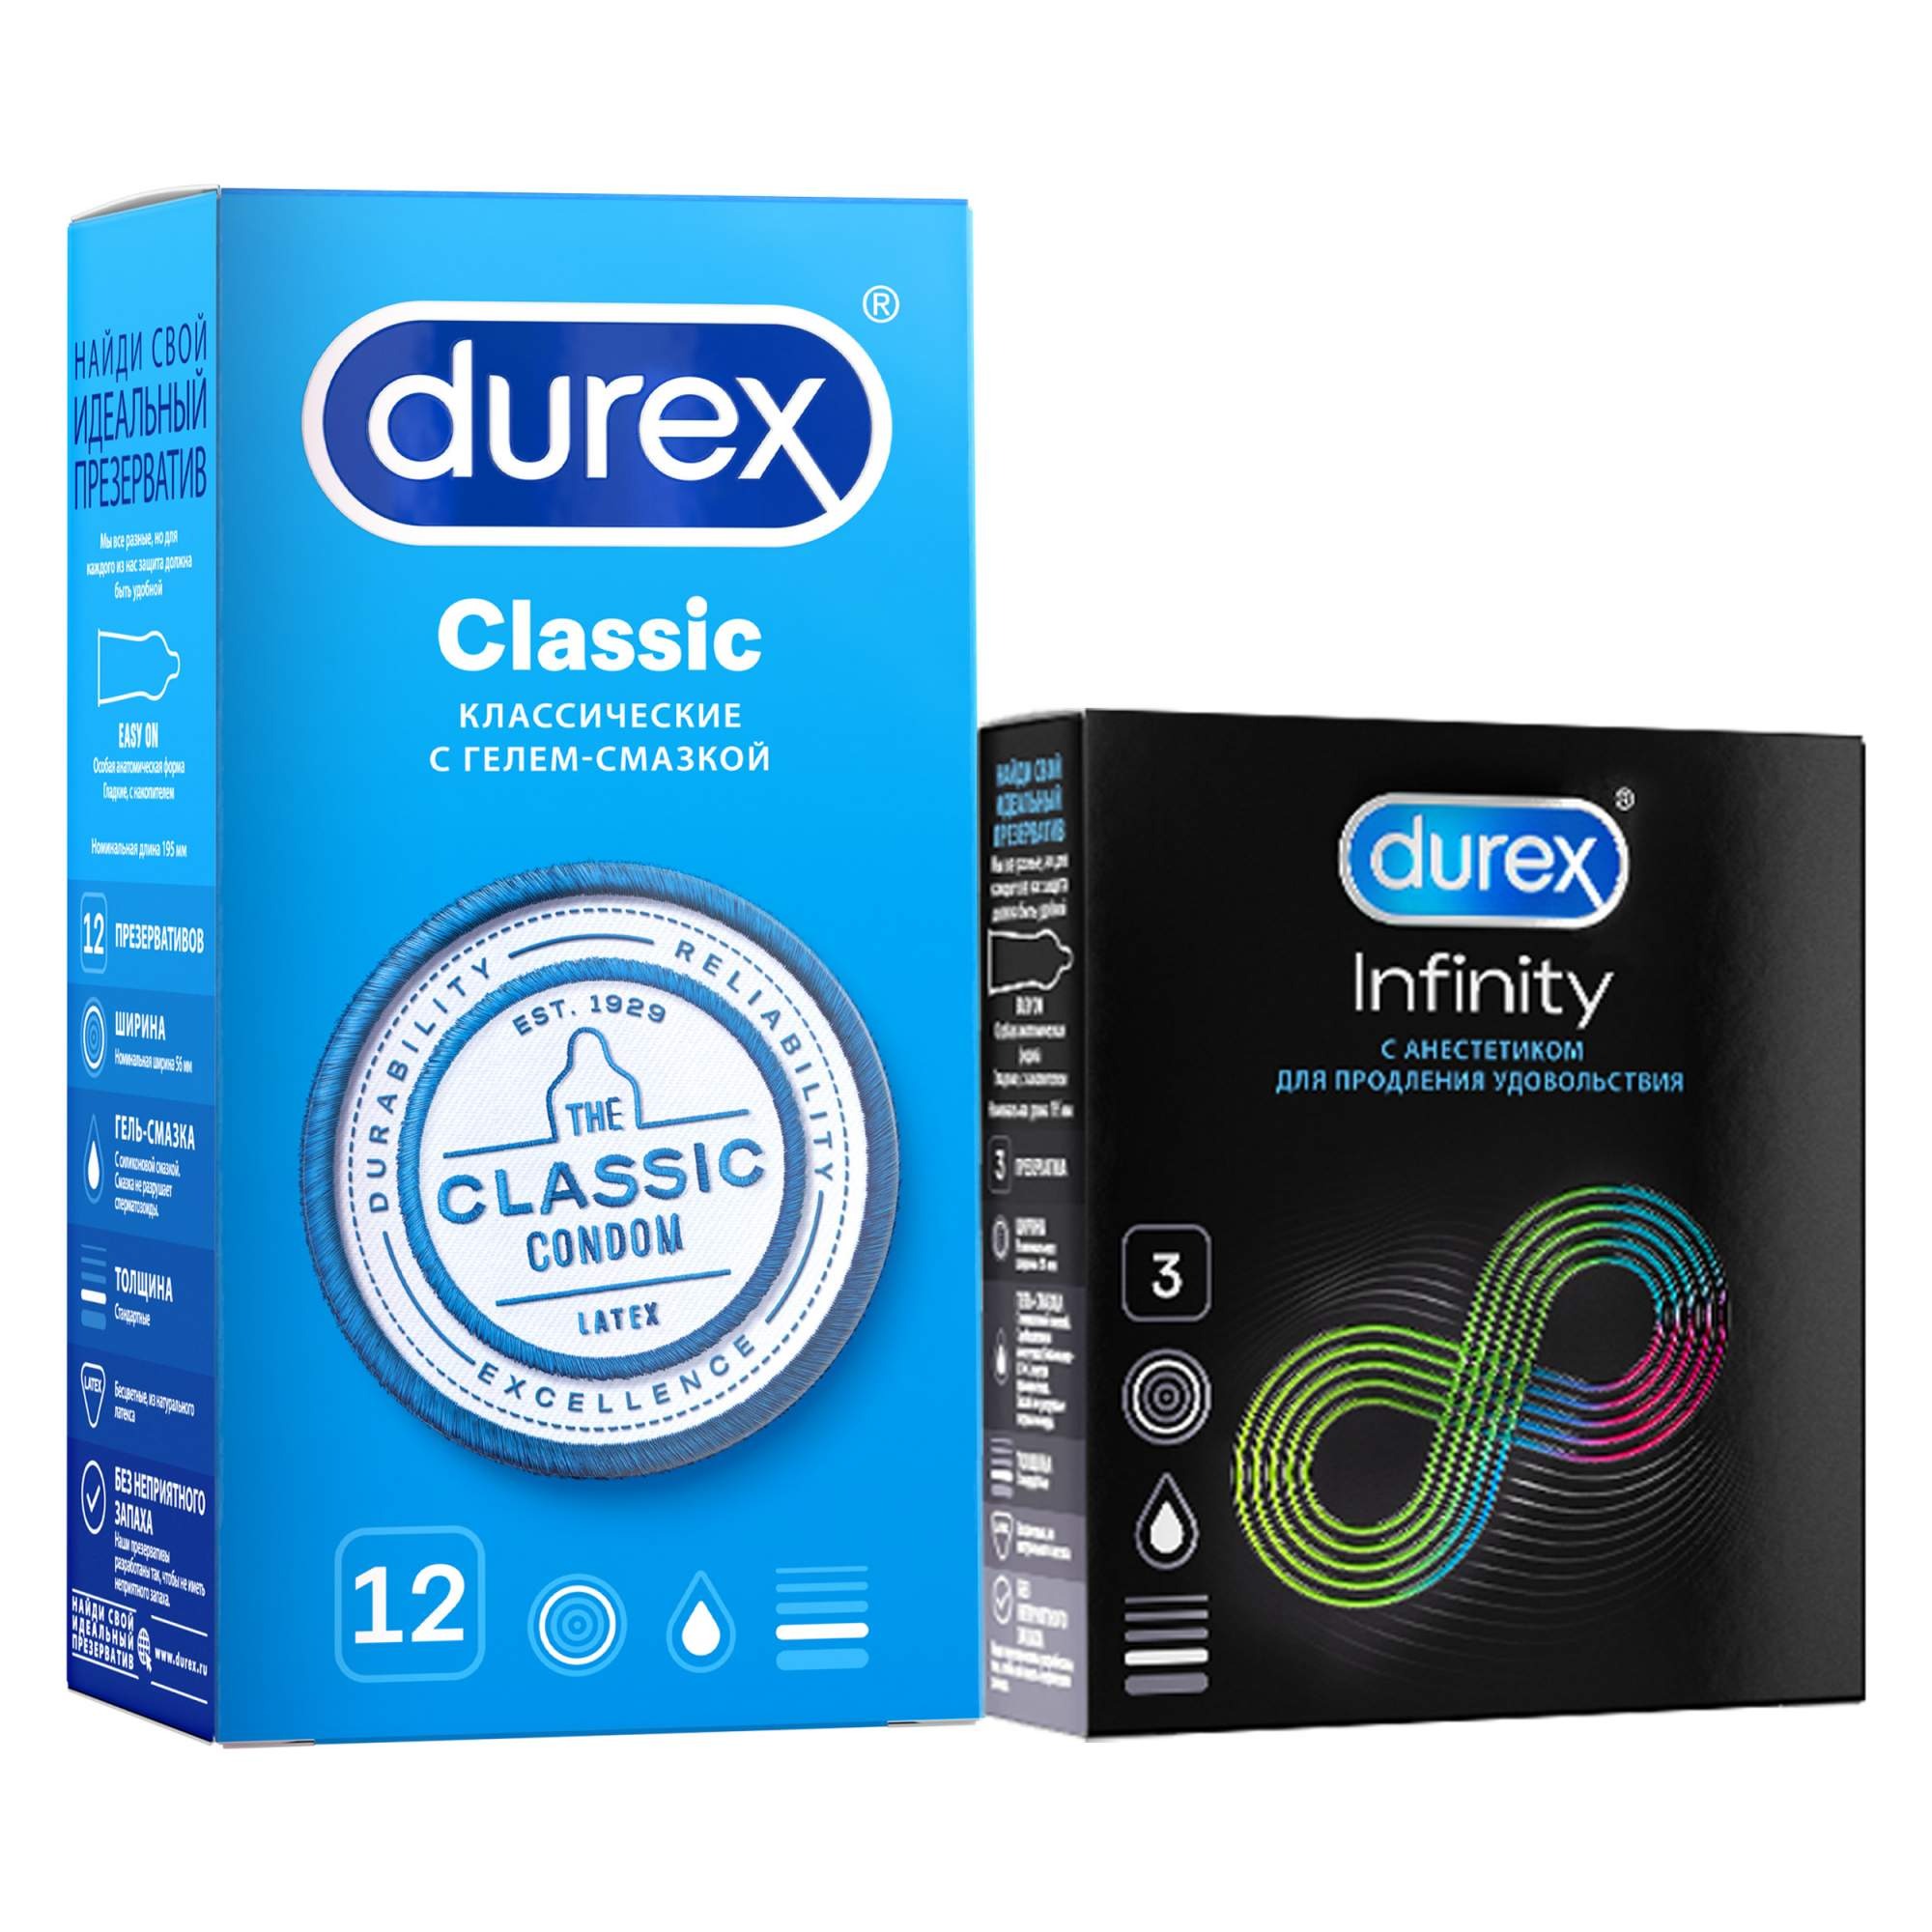 Набор презервативов Durex Classic гладкие №12, с анестетиком Infinity гладкие №3